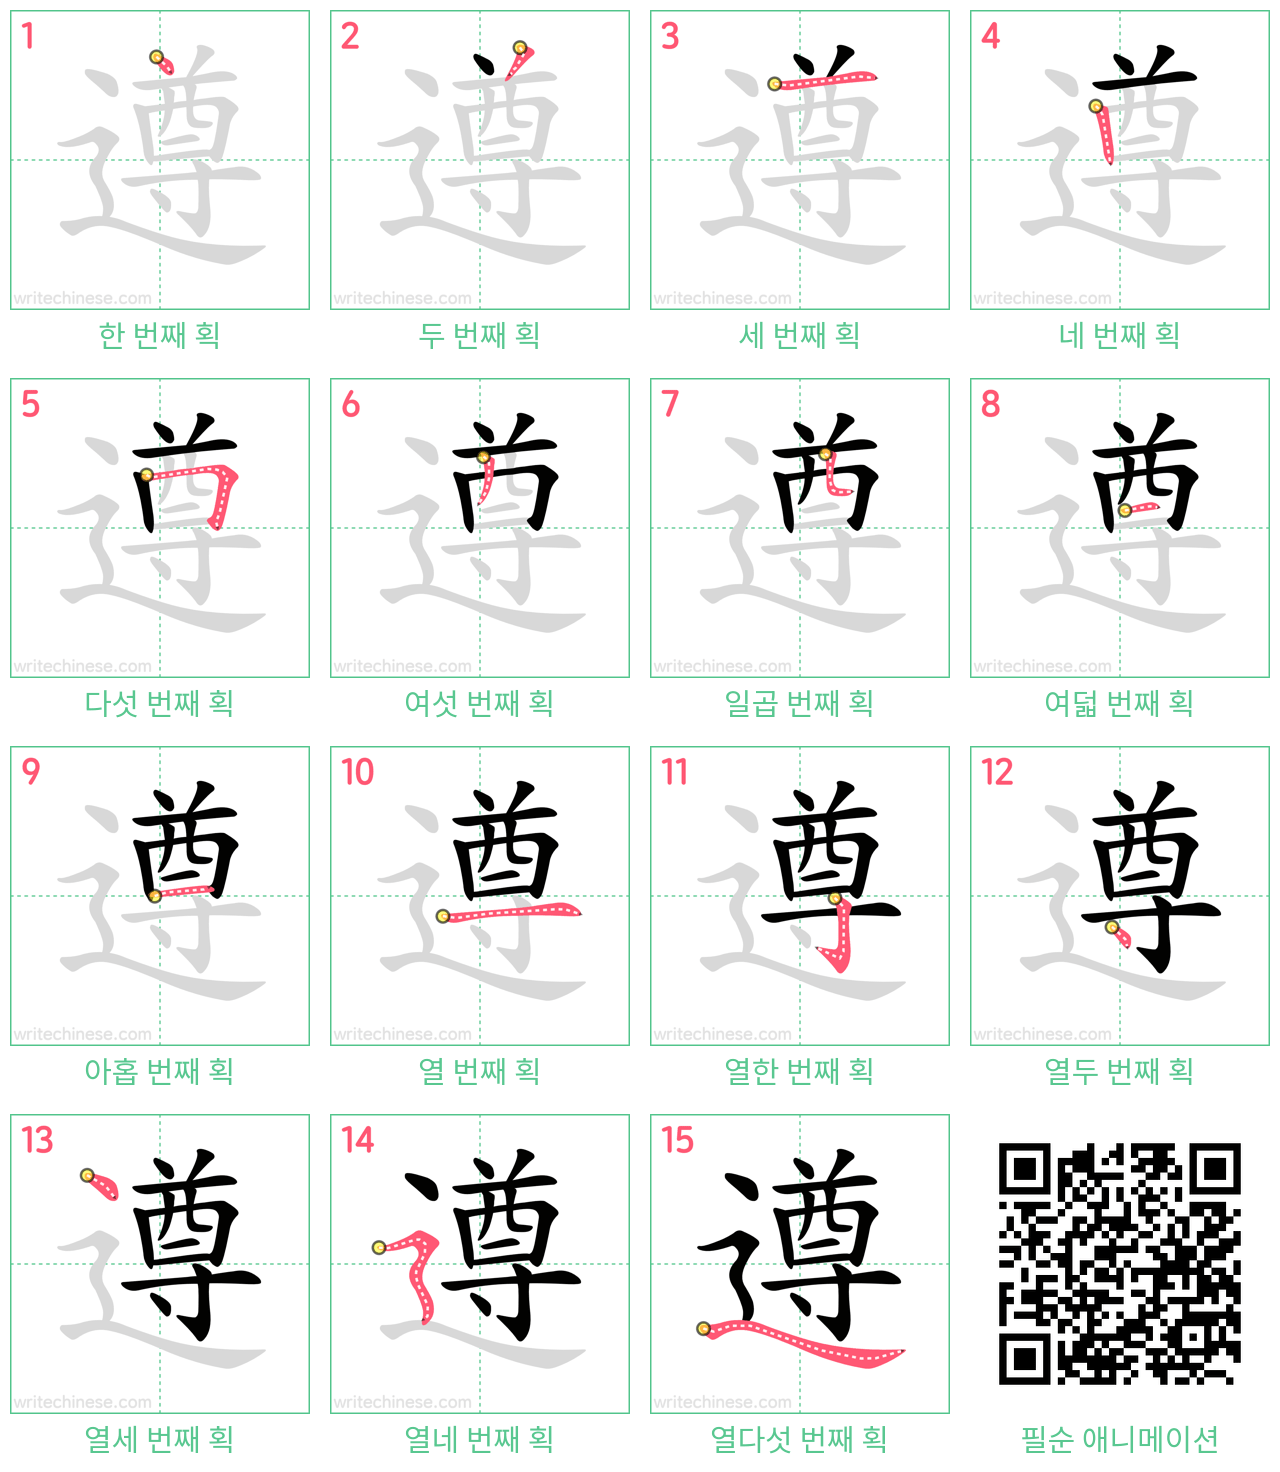 遵 step-by-step stroke order diagrams